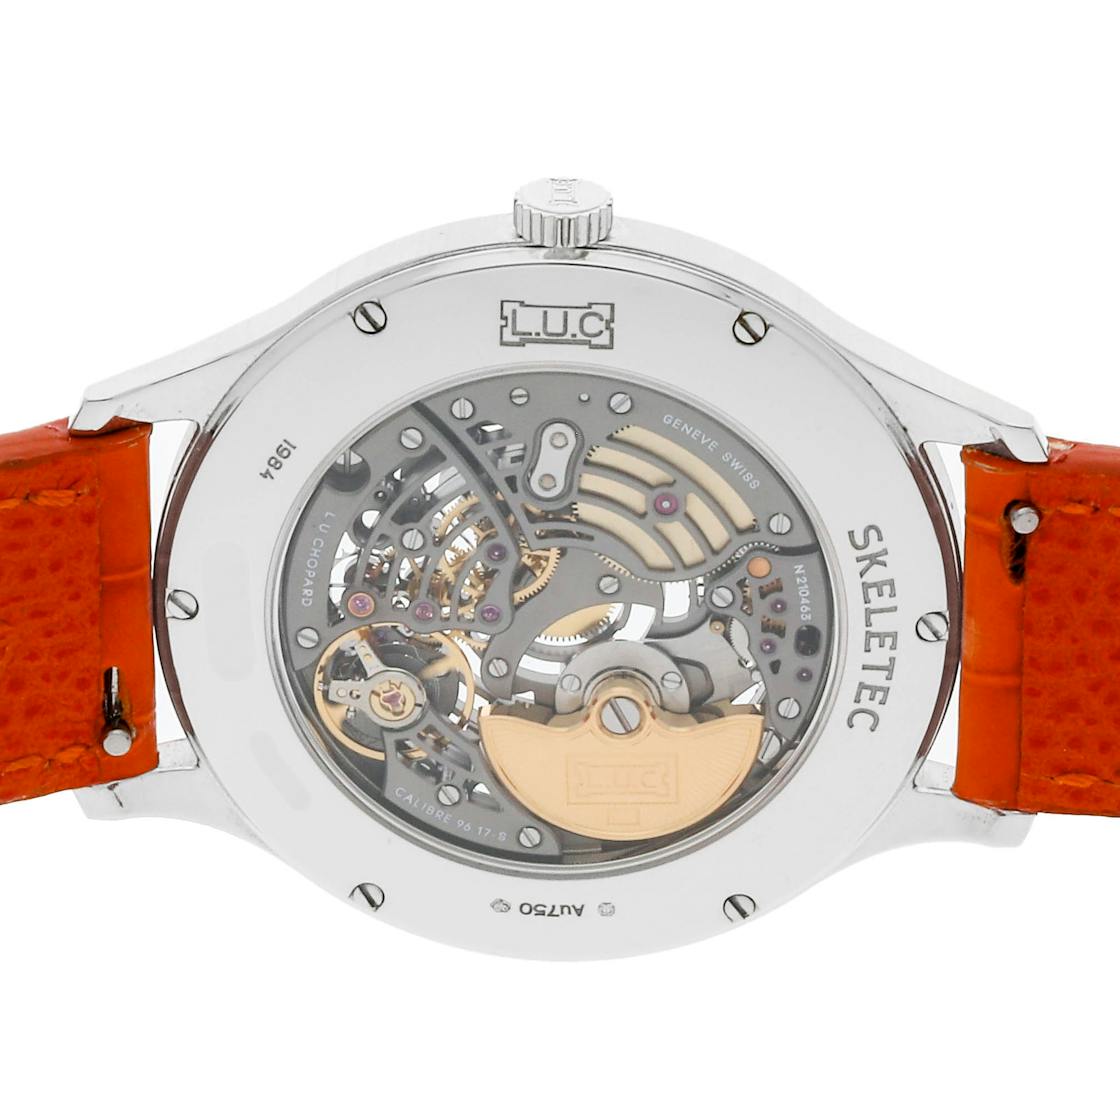 Chopard Men's L.U.C XP Skeletec Watch in Skeleton, Stainless Steel, Automatic | Govberg 161984-1001